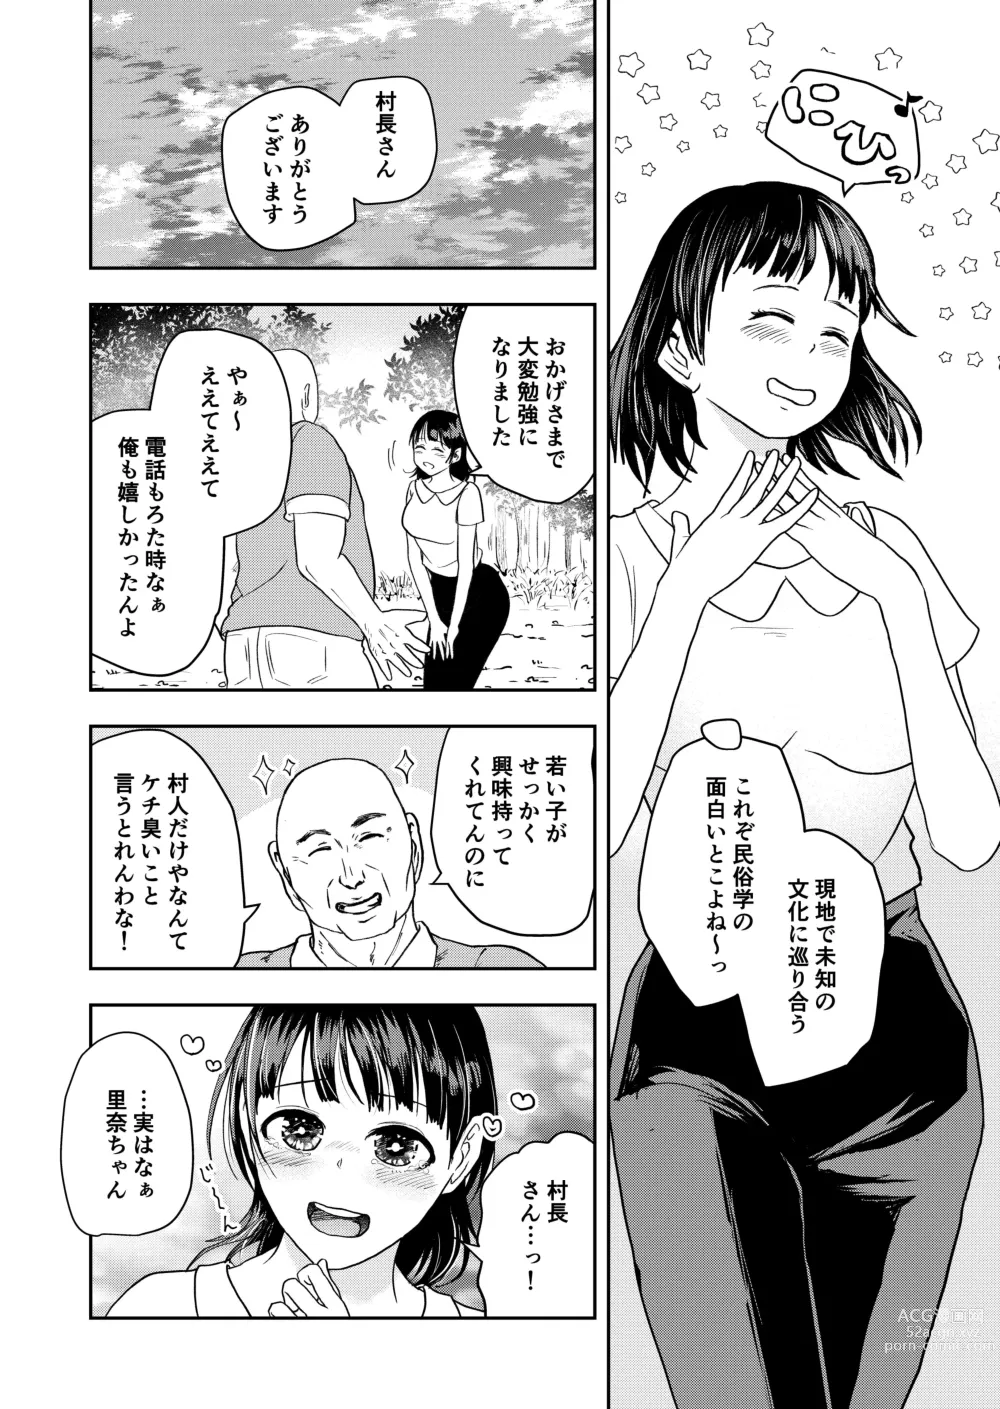 Page 4 of doujinshi Inaka no Omatsuri